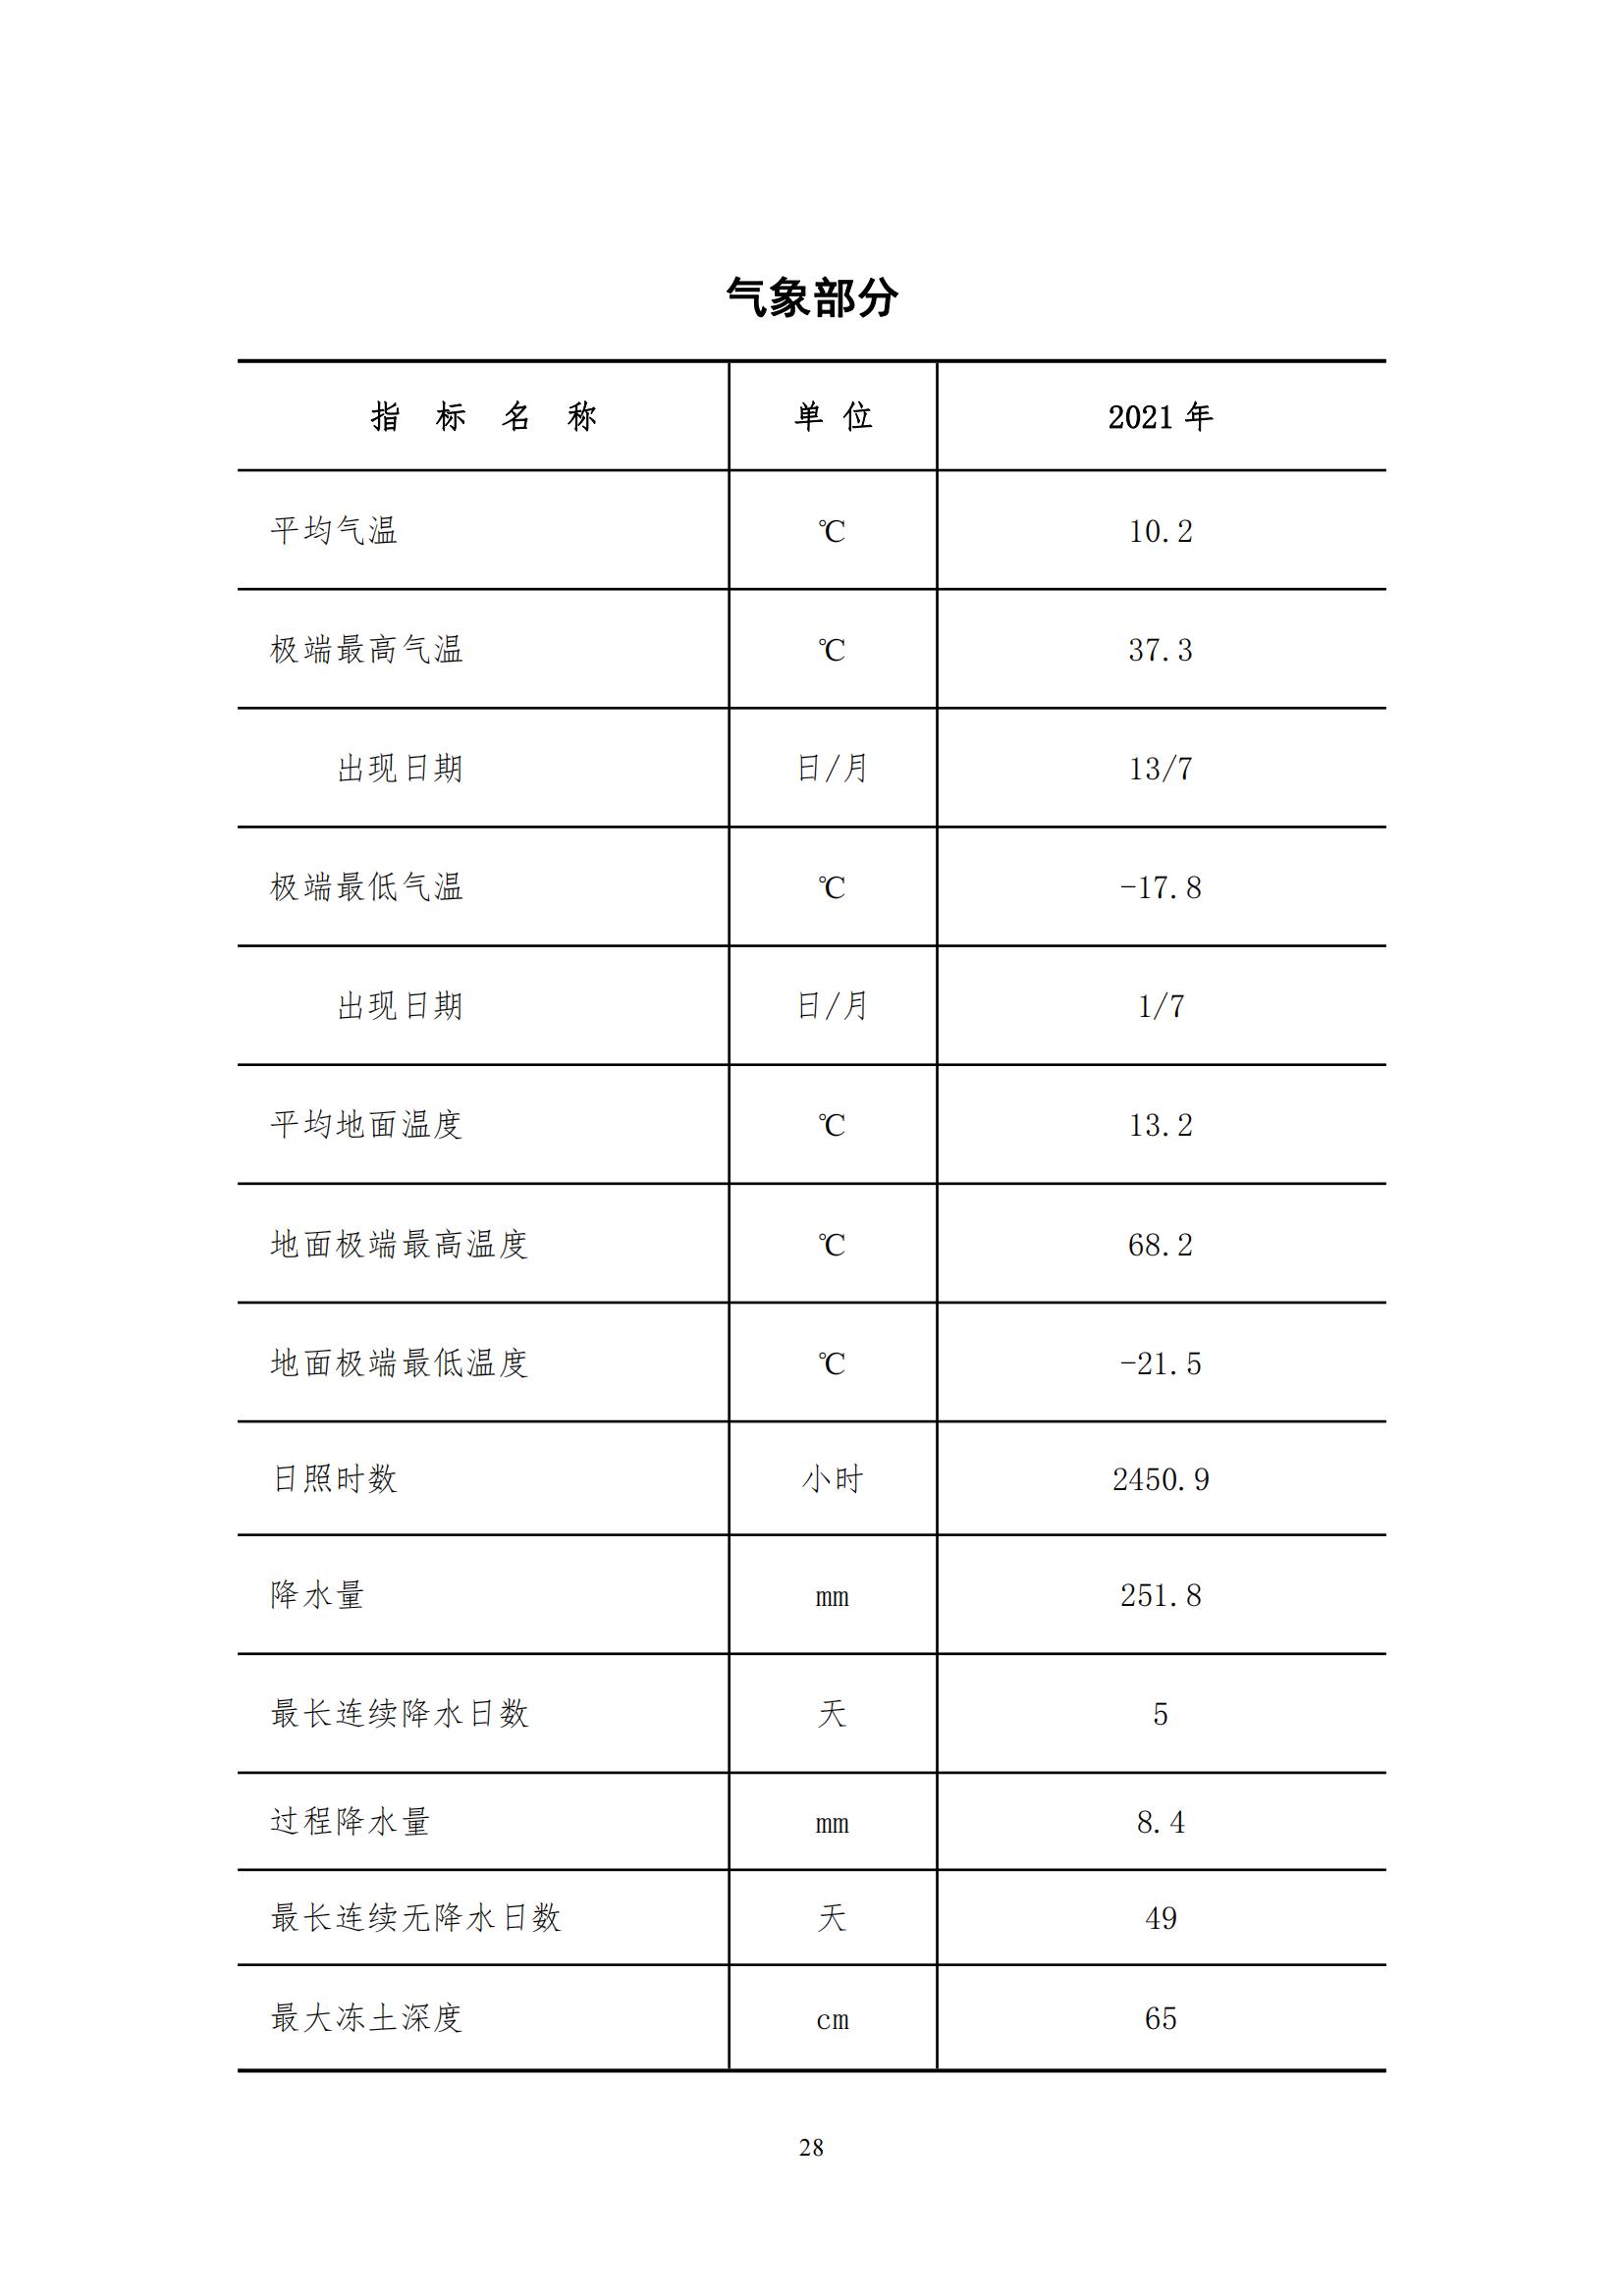 2021年永靖县国民经济和社会发展统计公报_27.jpg